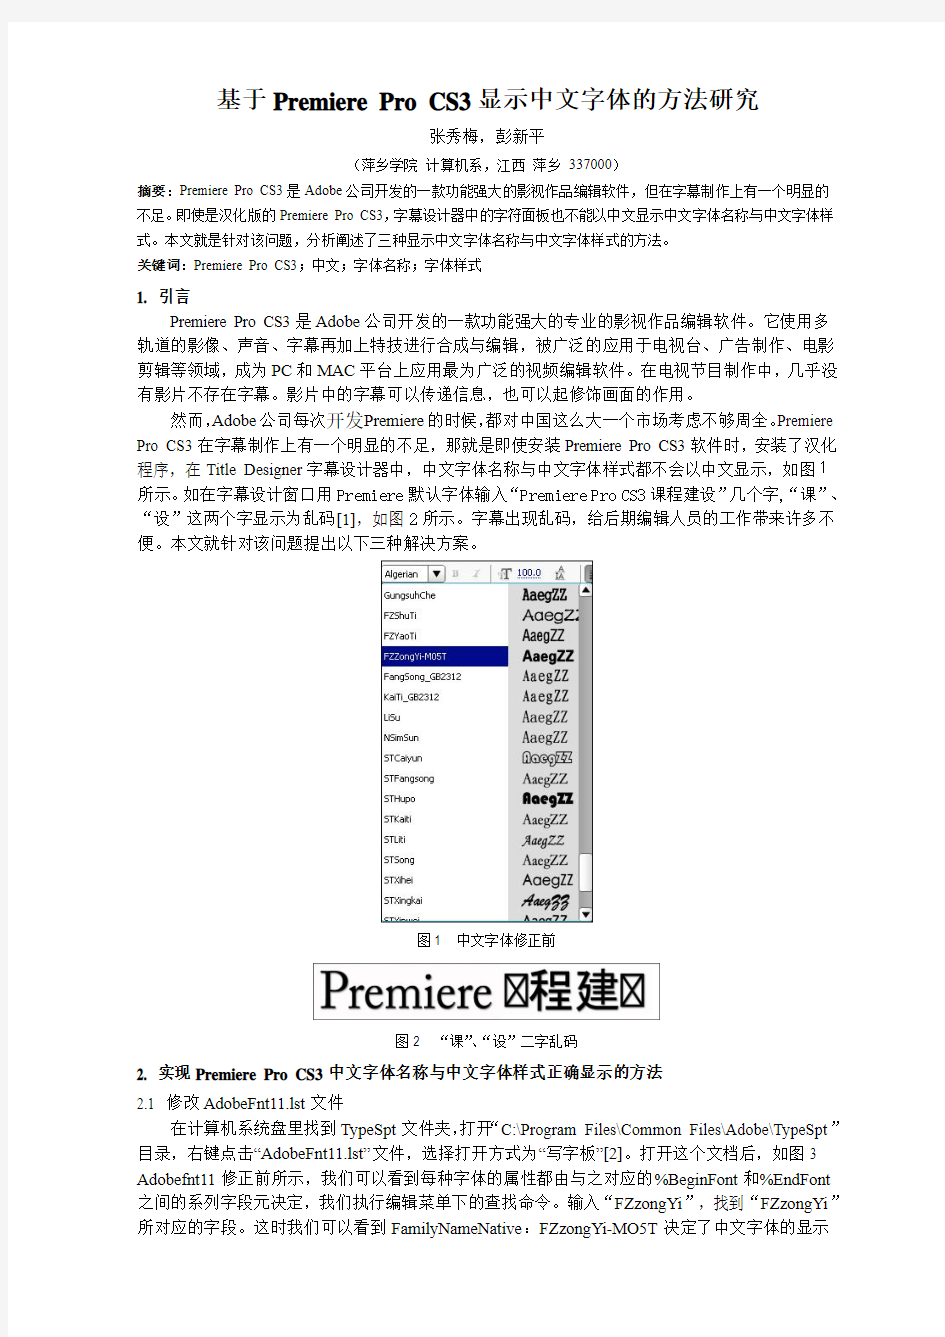 基于Premiere Pro CS3显示中文字体名称的方法研究